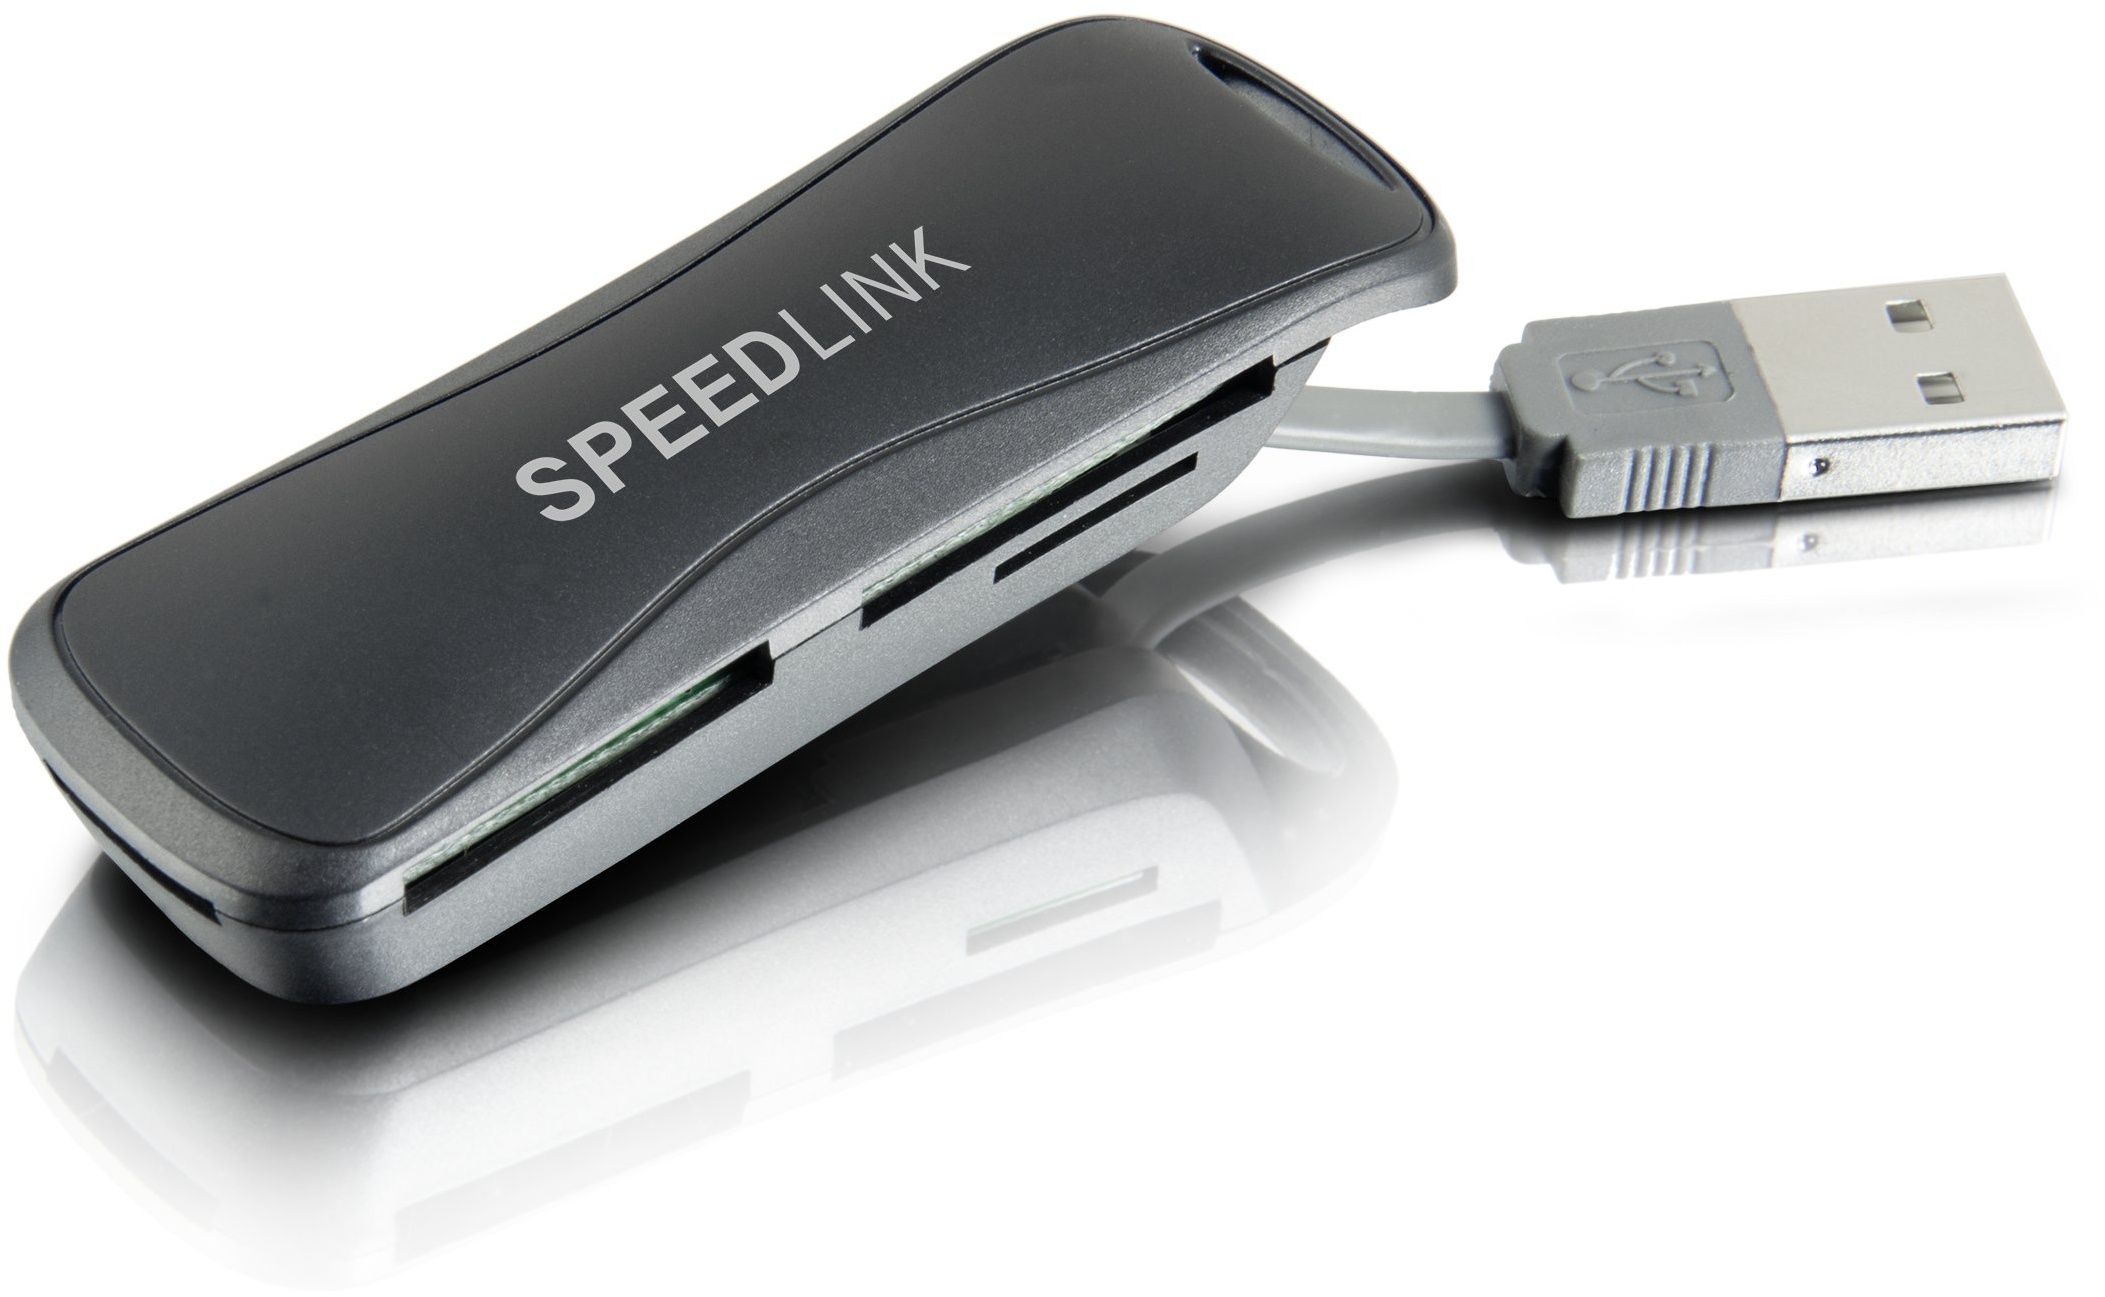 Speedlink CARREA Portable Card Reader - Tragbarer Multiformat-Kartenleser mit USB 2.0 Anschluss - 4 Karten-Steckplätze - mit USB Kabel - für PC/Notebook/Laptop - schwarz